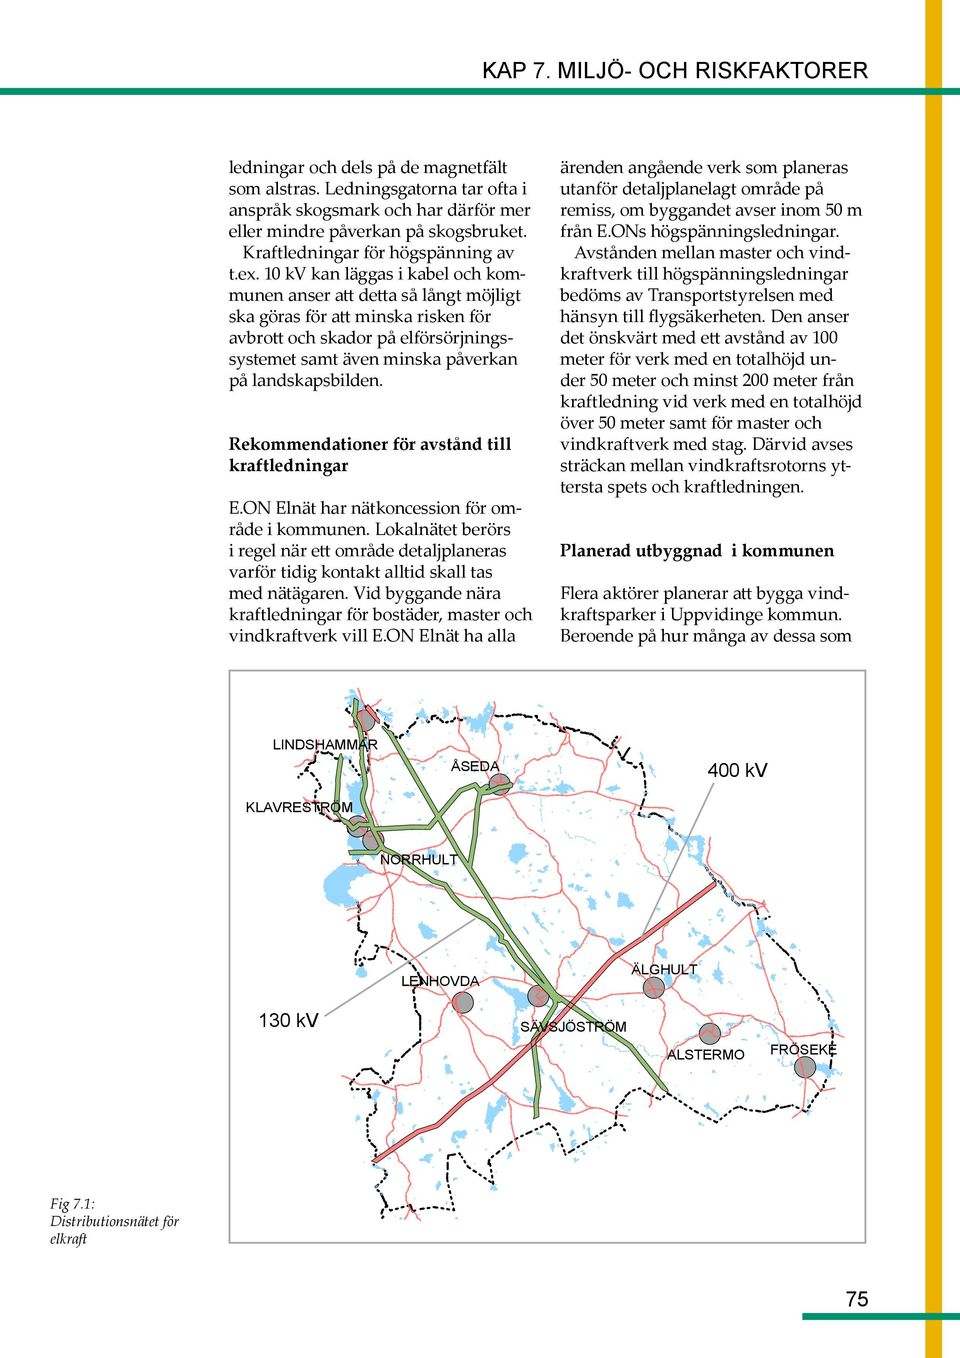 Rekommendationer för avstånd till kraftledningar E.ON Elnät har nätkoncession för område i kommunen.